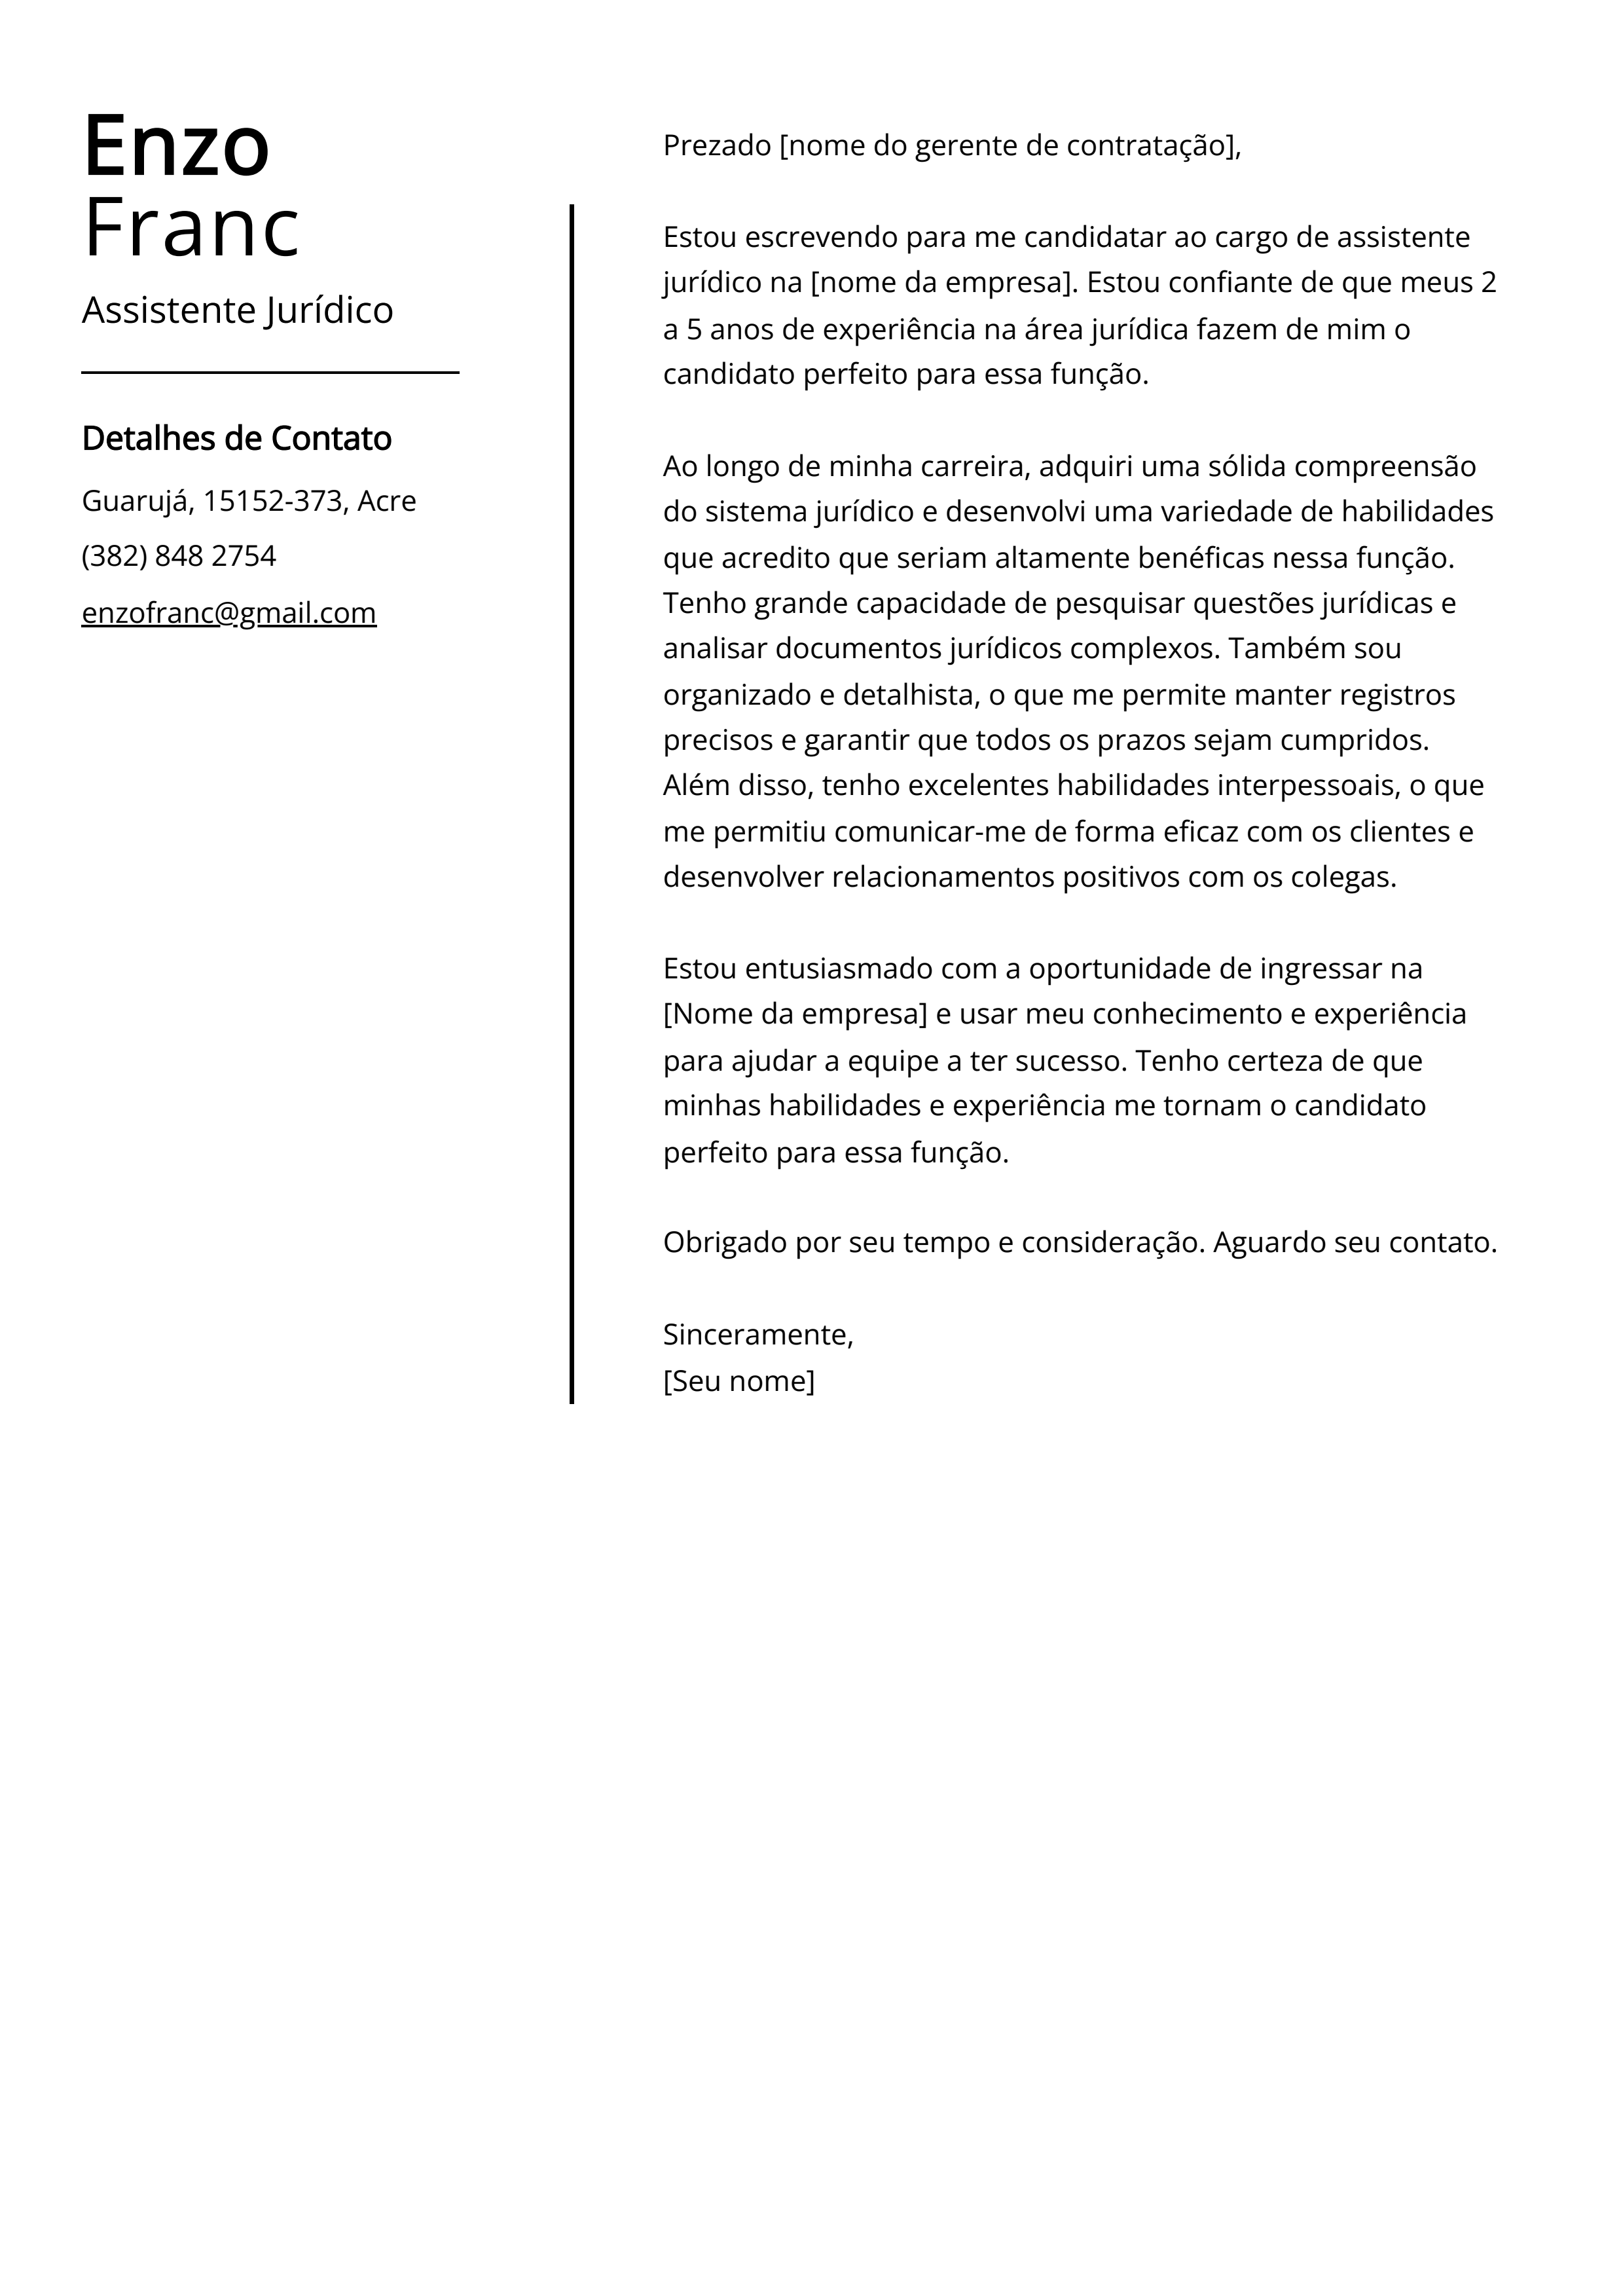 Exemplo de carta de apresentação do Assistente Jurídico